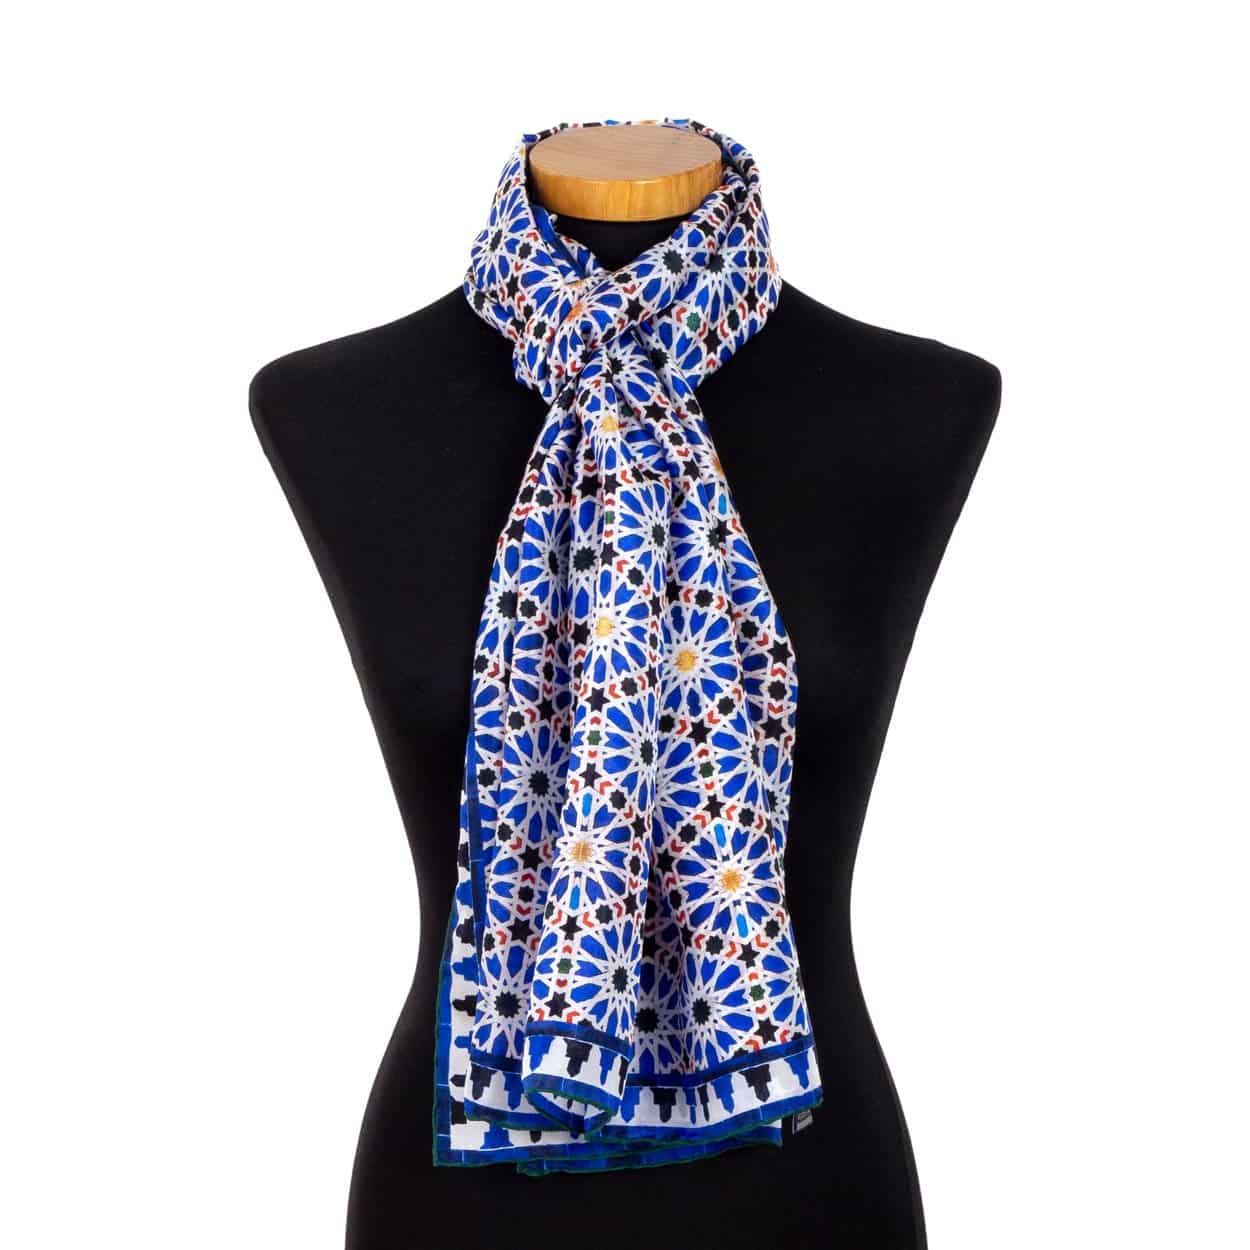 Pañuelo de seda azul y blanco para el cuello inspirado en el arte islámico